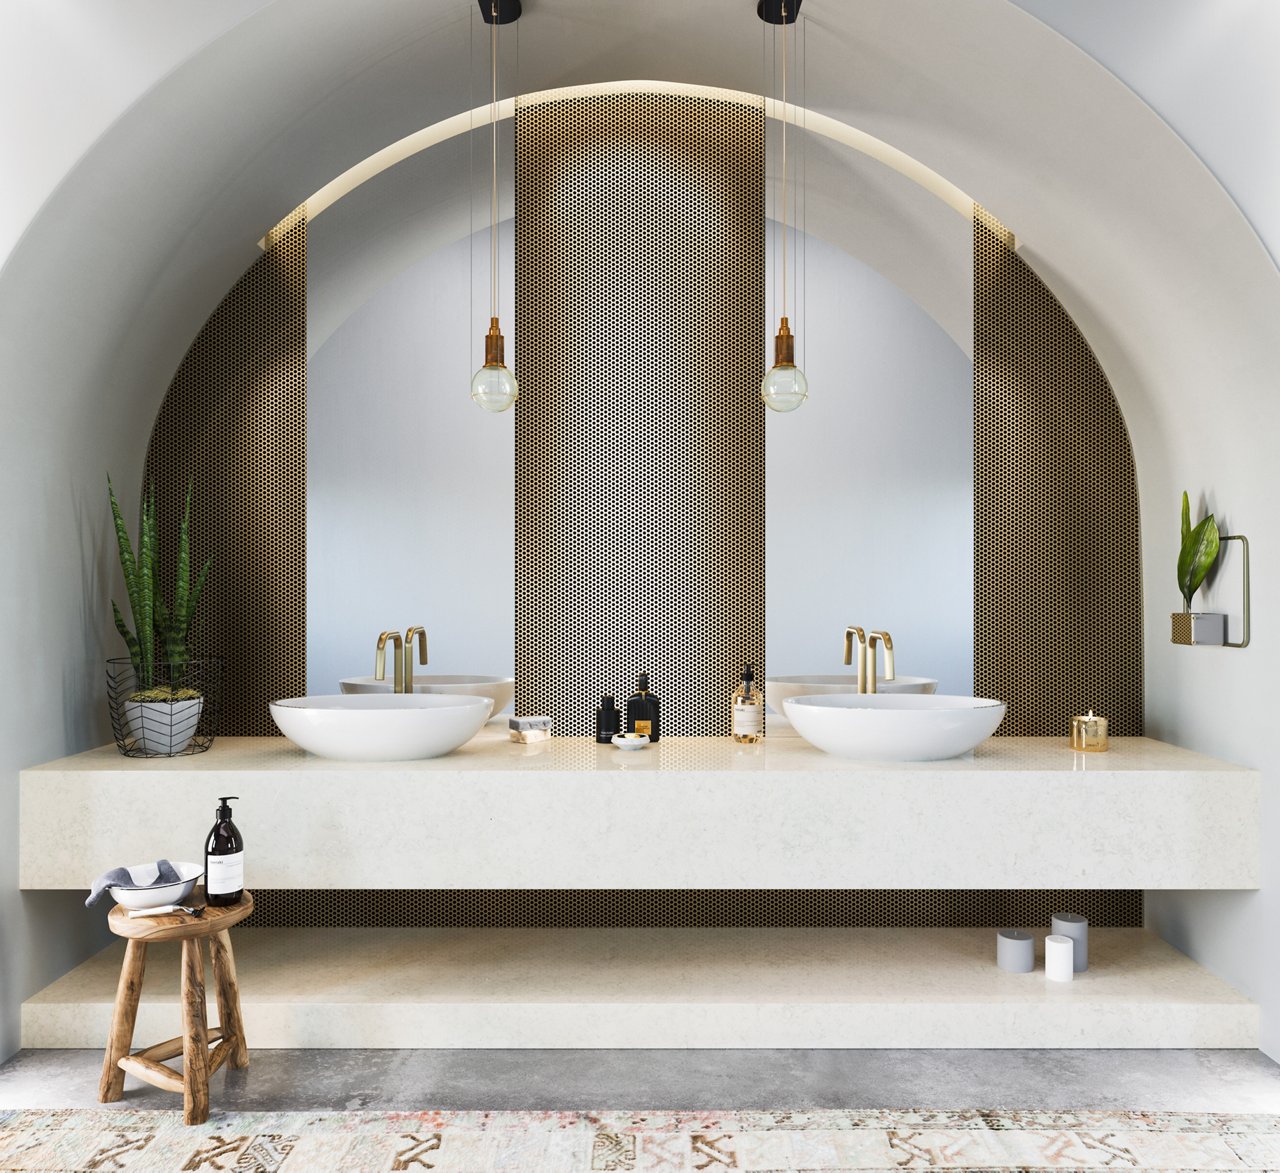 Cambria Malvern quartz bathroom vanity countertop